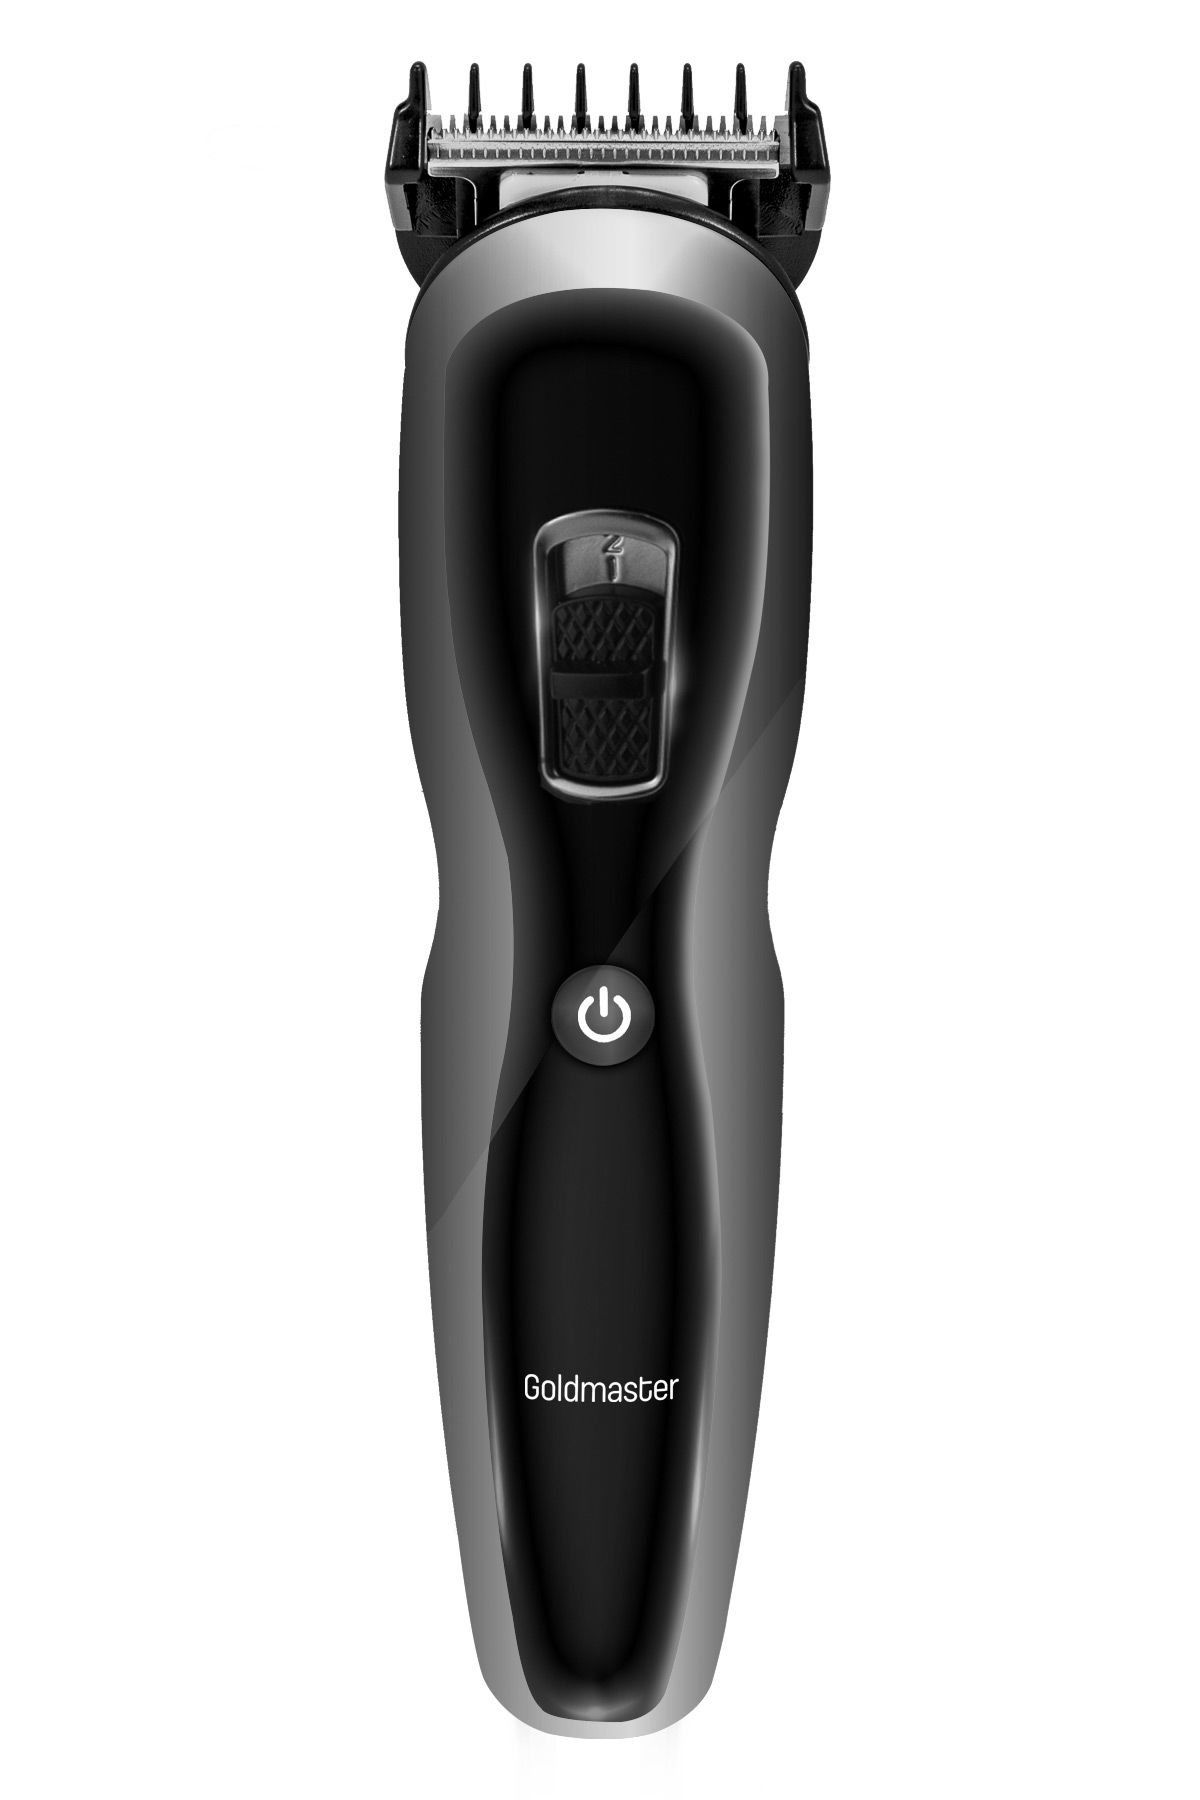 Cix 9 In 1 Kablolu Kablosuz Kullanımlı Lityum Bataryalı Hızlı Şarjlı Erkek Tıraş Bakım Seti